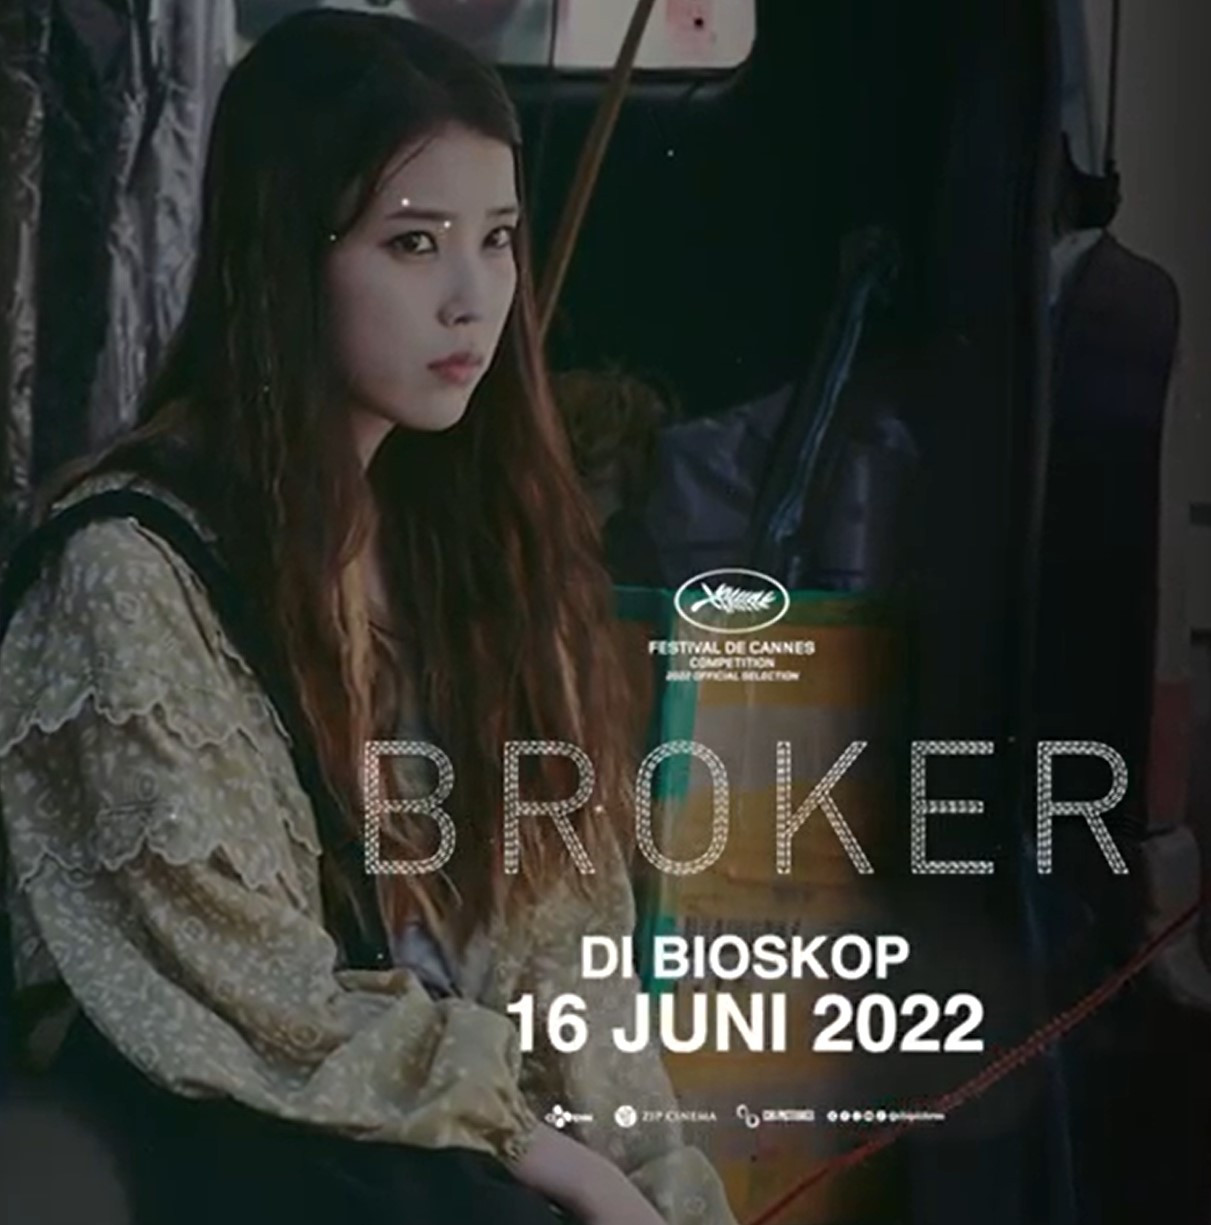 Dibintangi Iu, Film "Broker" Tayang Di Bioskop Indonesia Bulan Ini